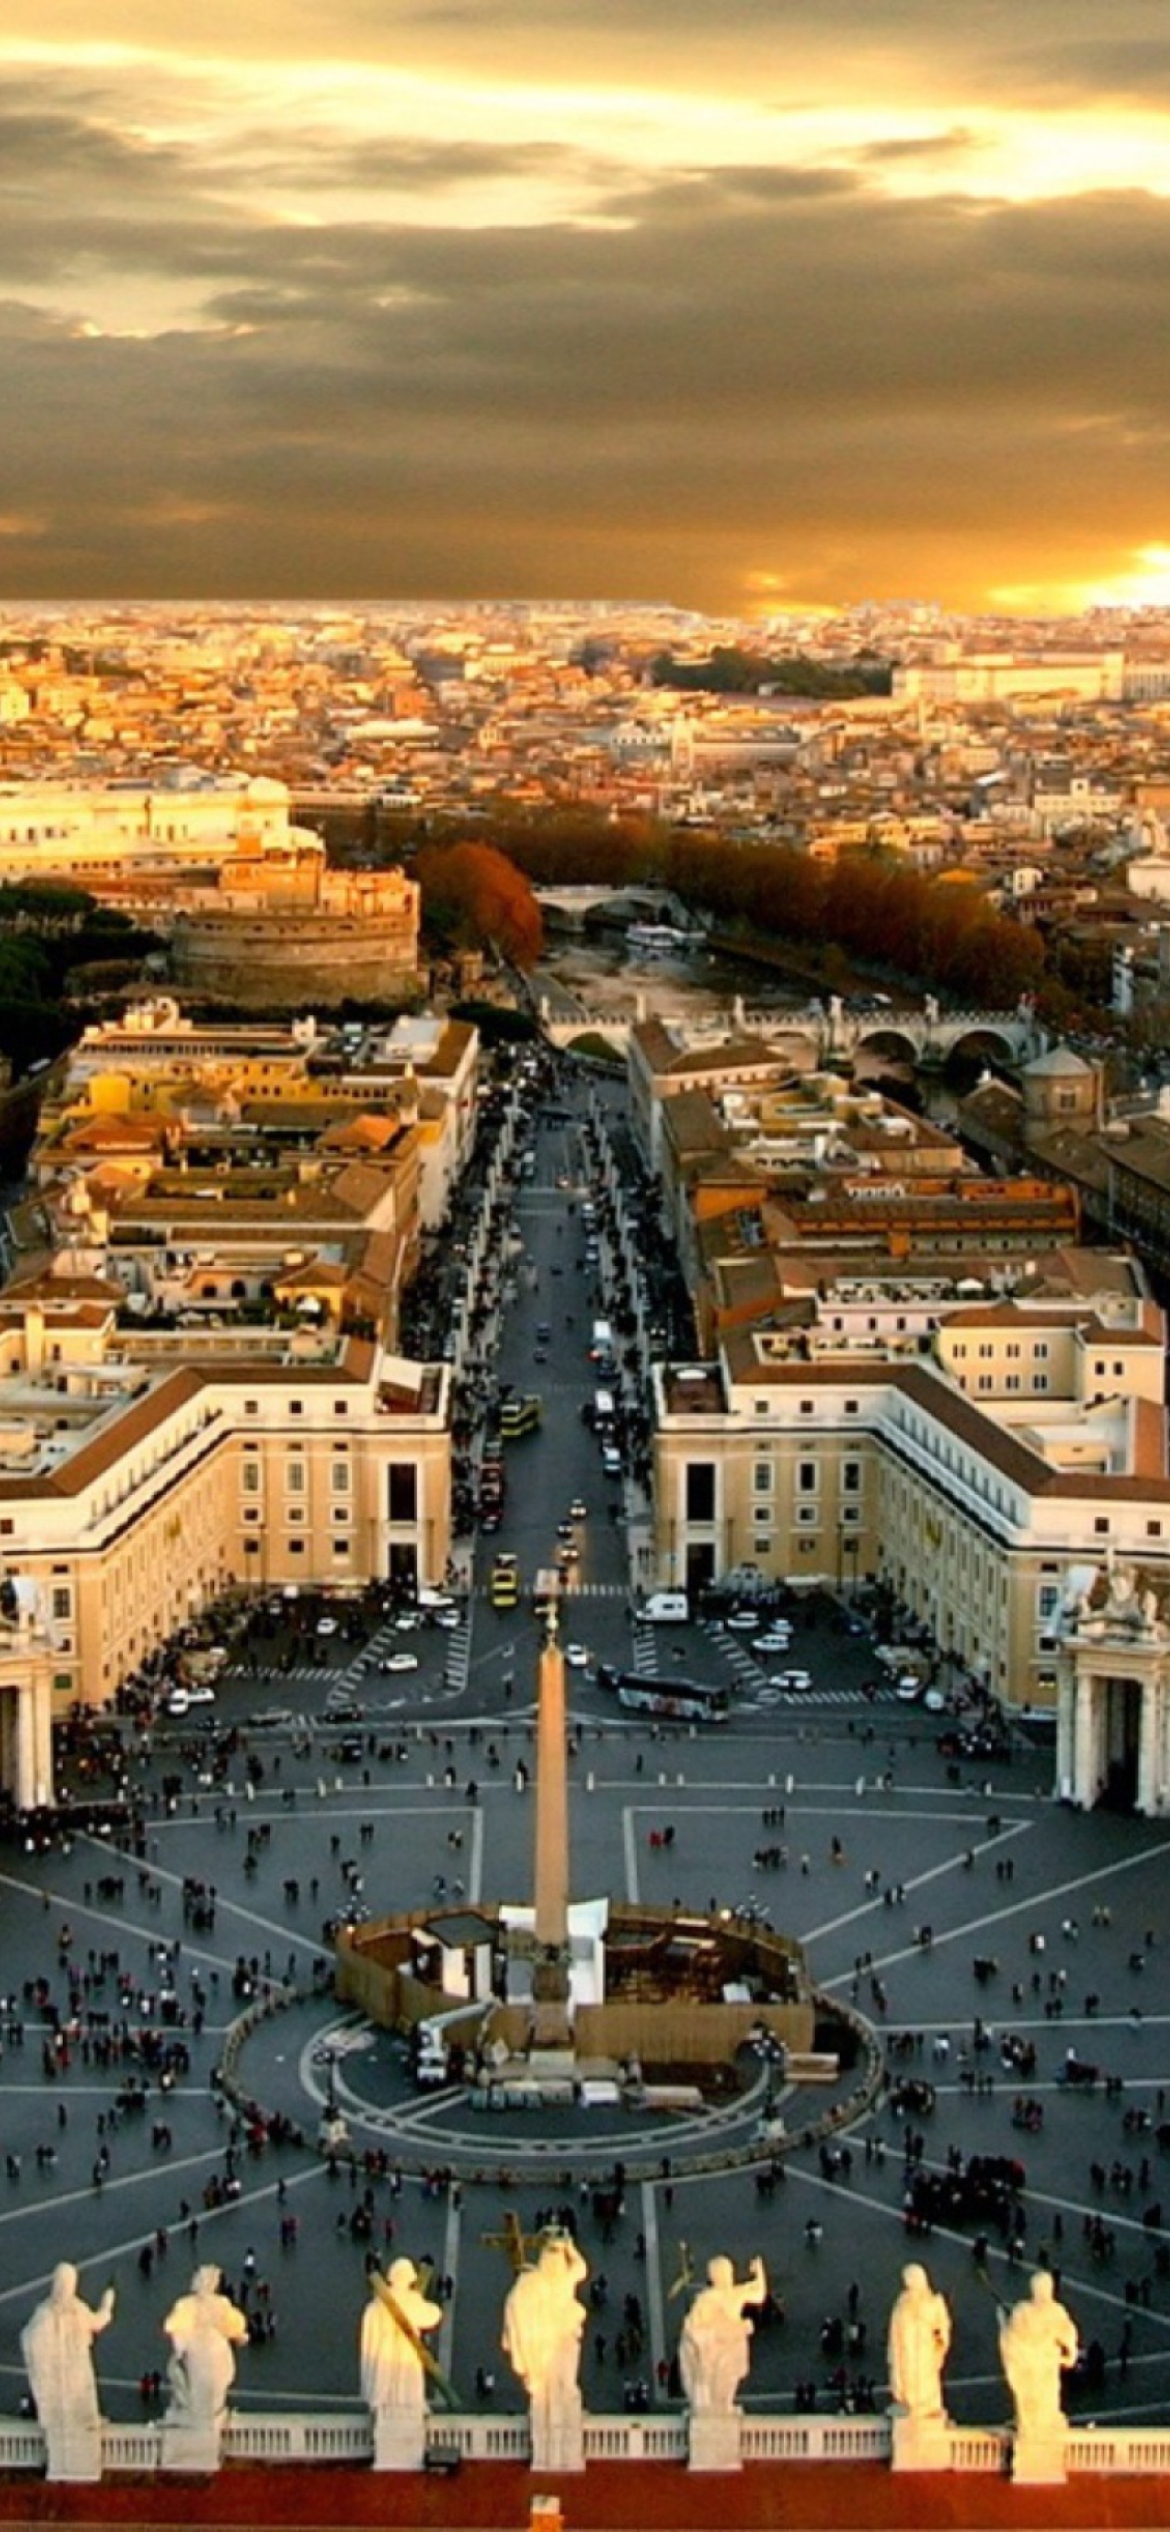 Das Piazza San Pietro Square - Vatican City Rome Wallpaper 1170x2532